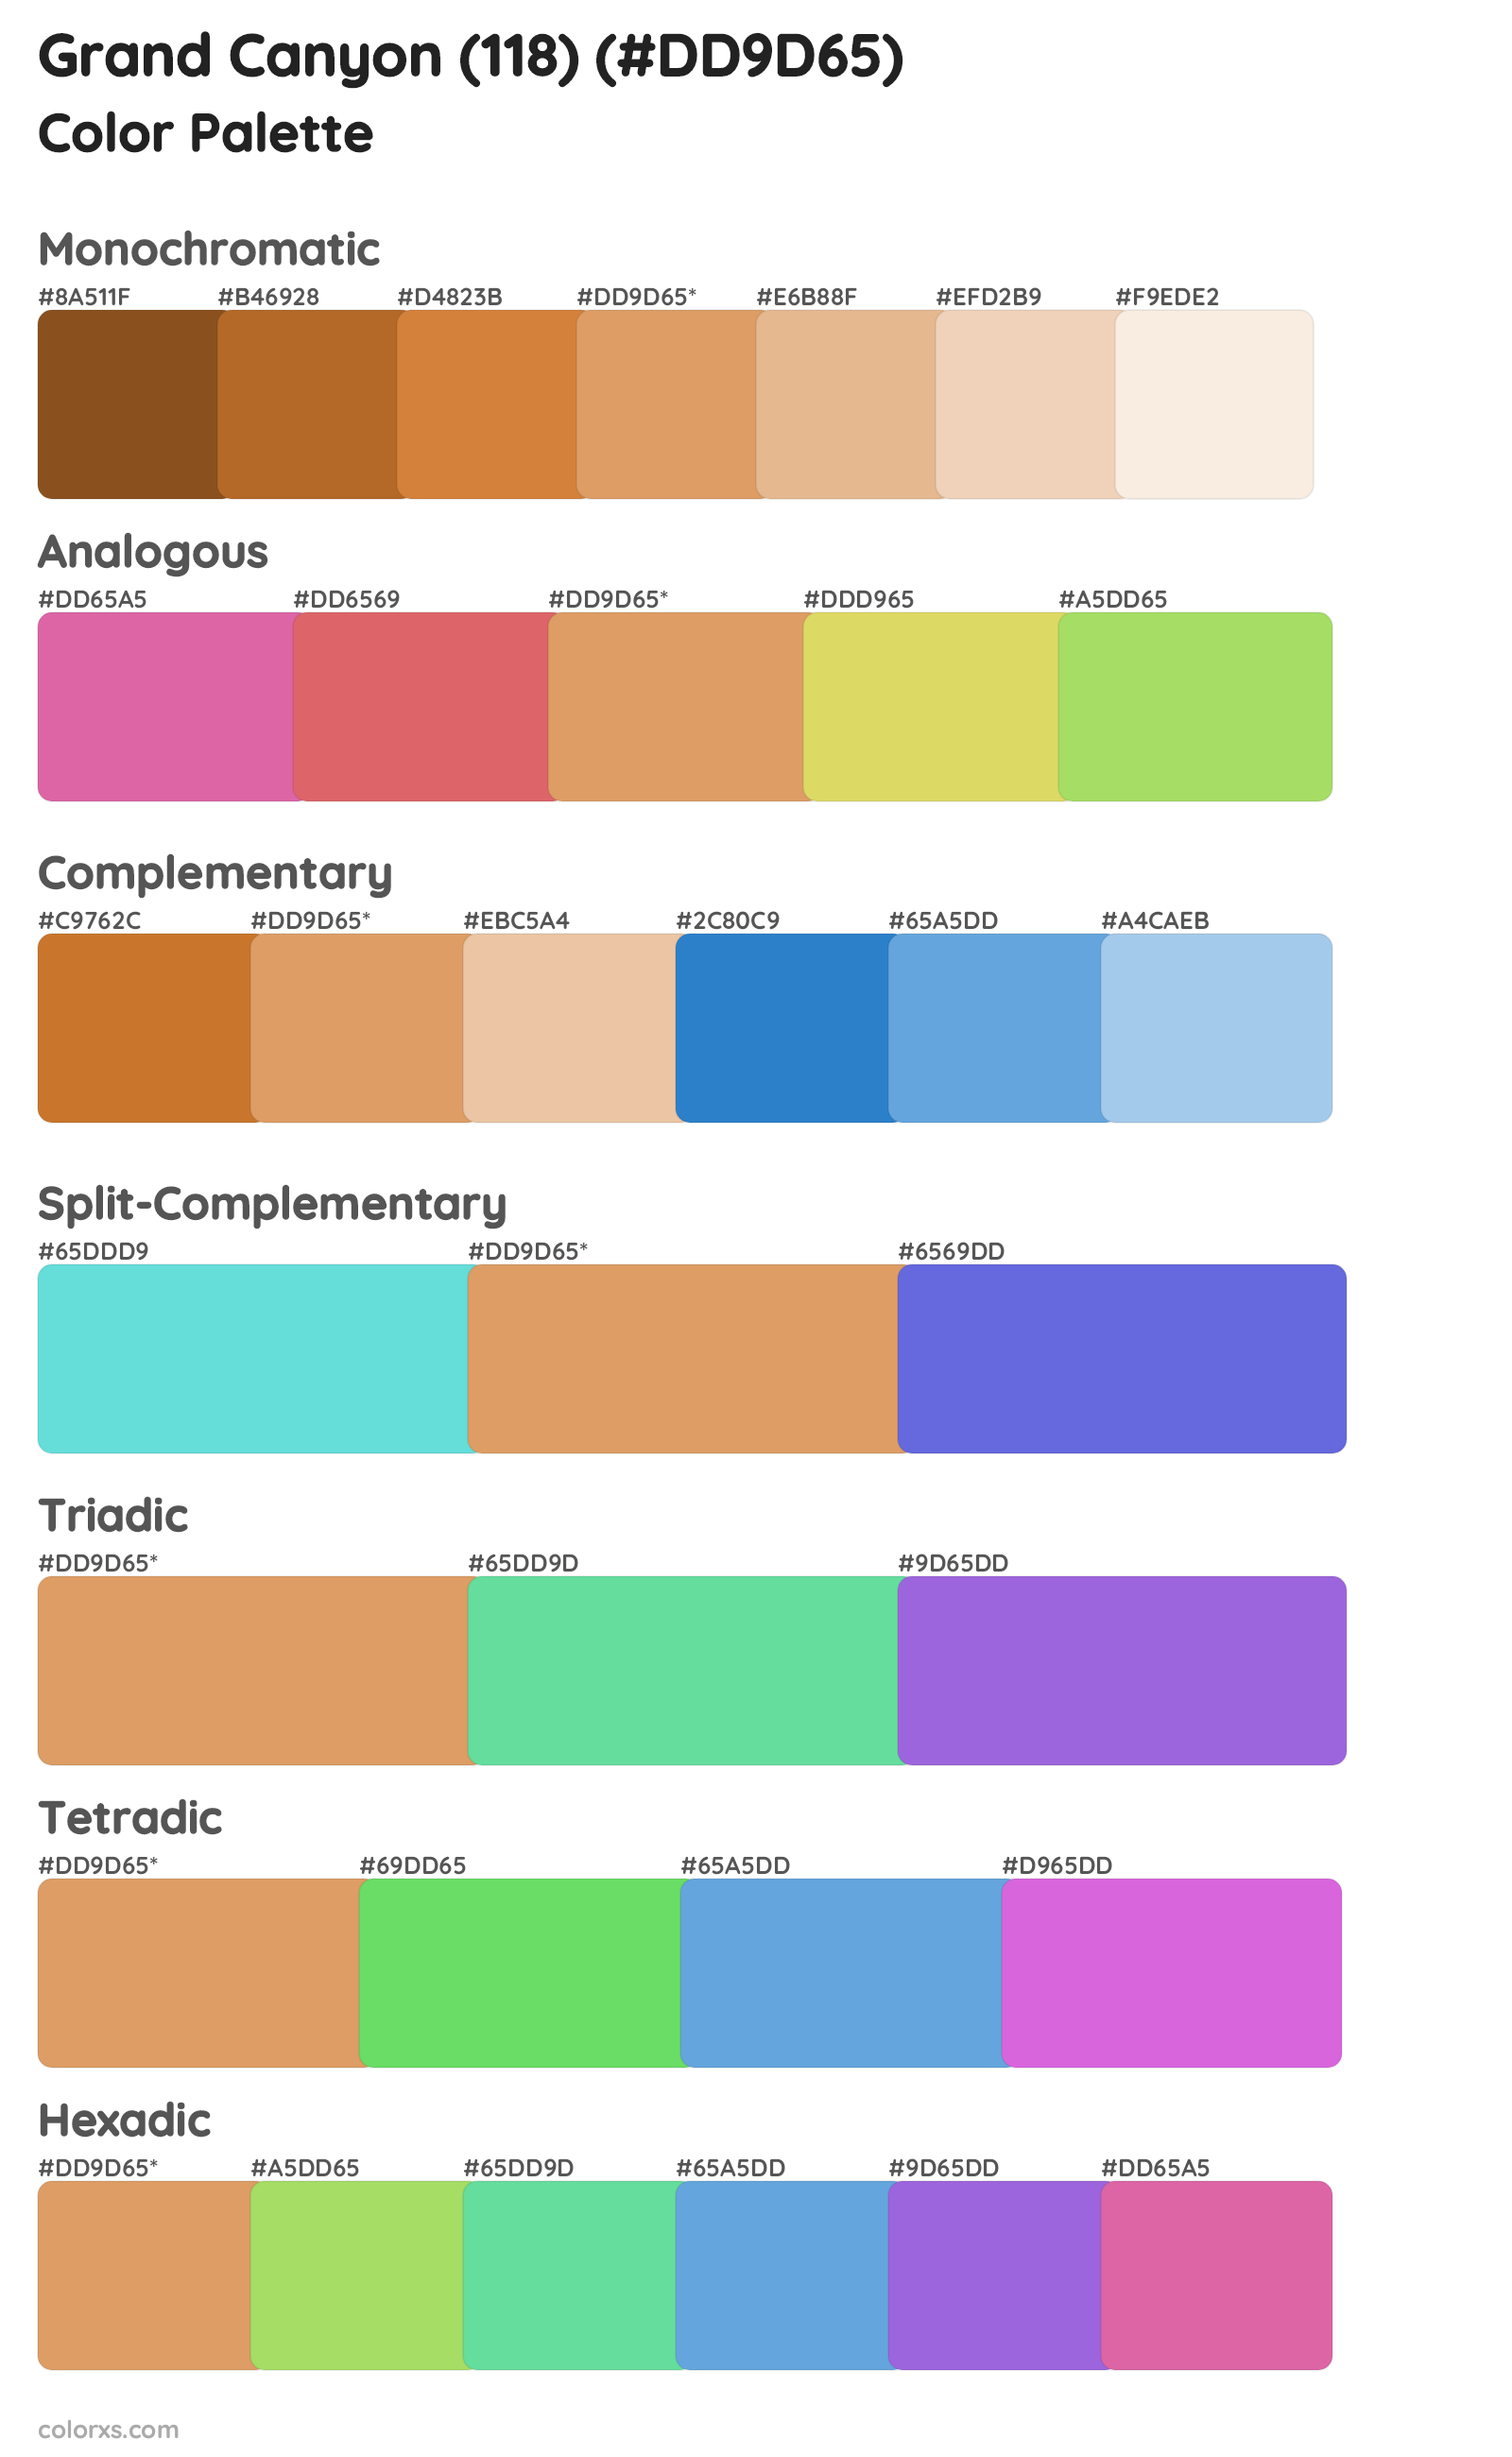 Grand Canyon (118) Color Scheme Palettes